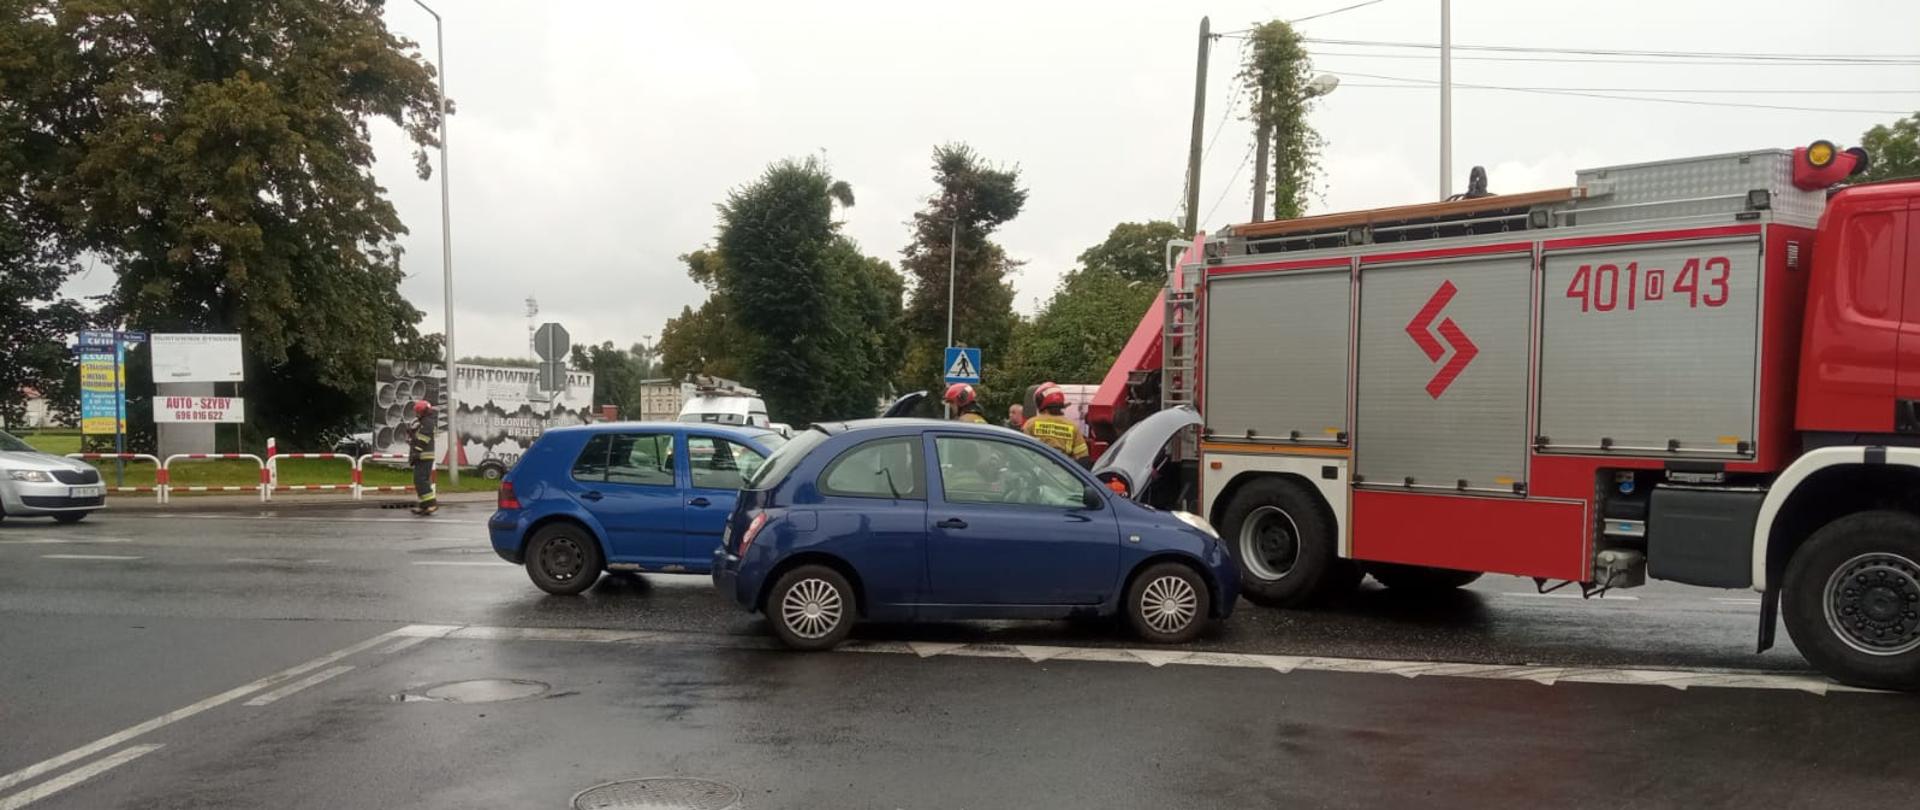 Wypadek z udziałem 2 samochodów osobowych przy ul. Krakusa w Brzegu